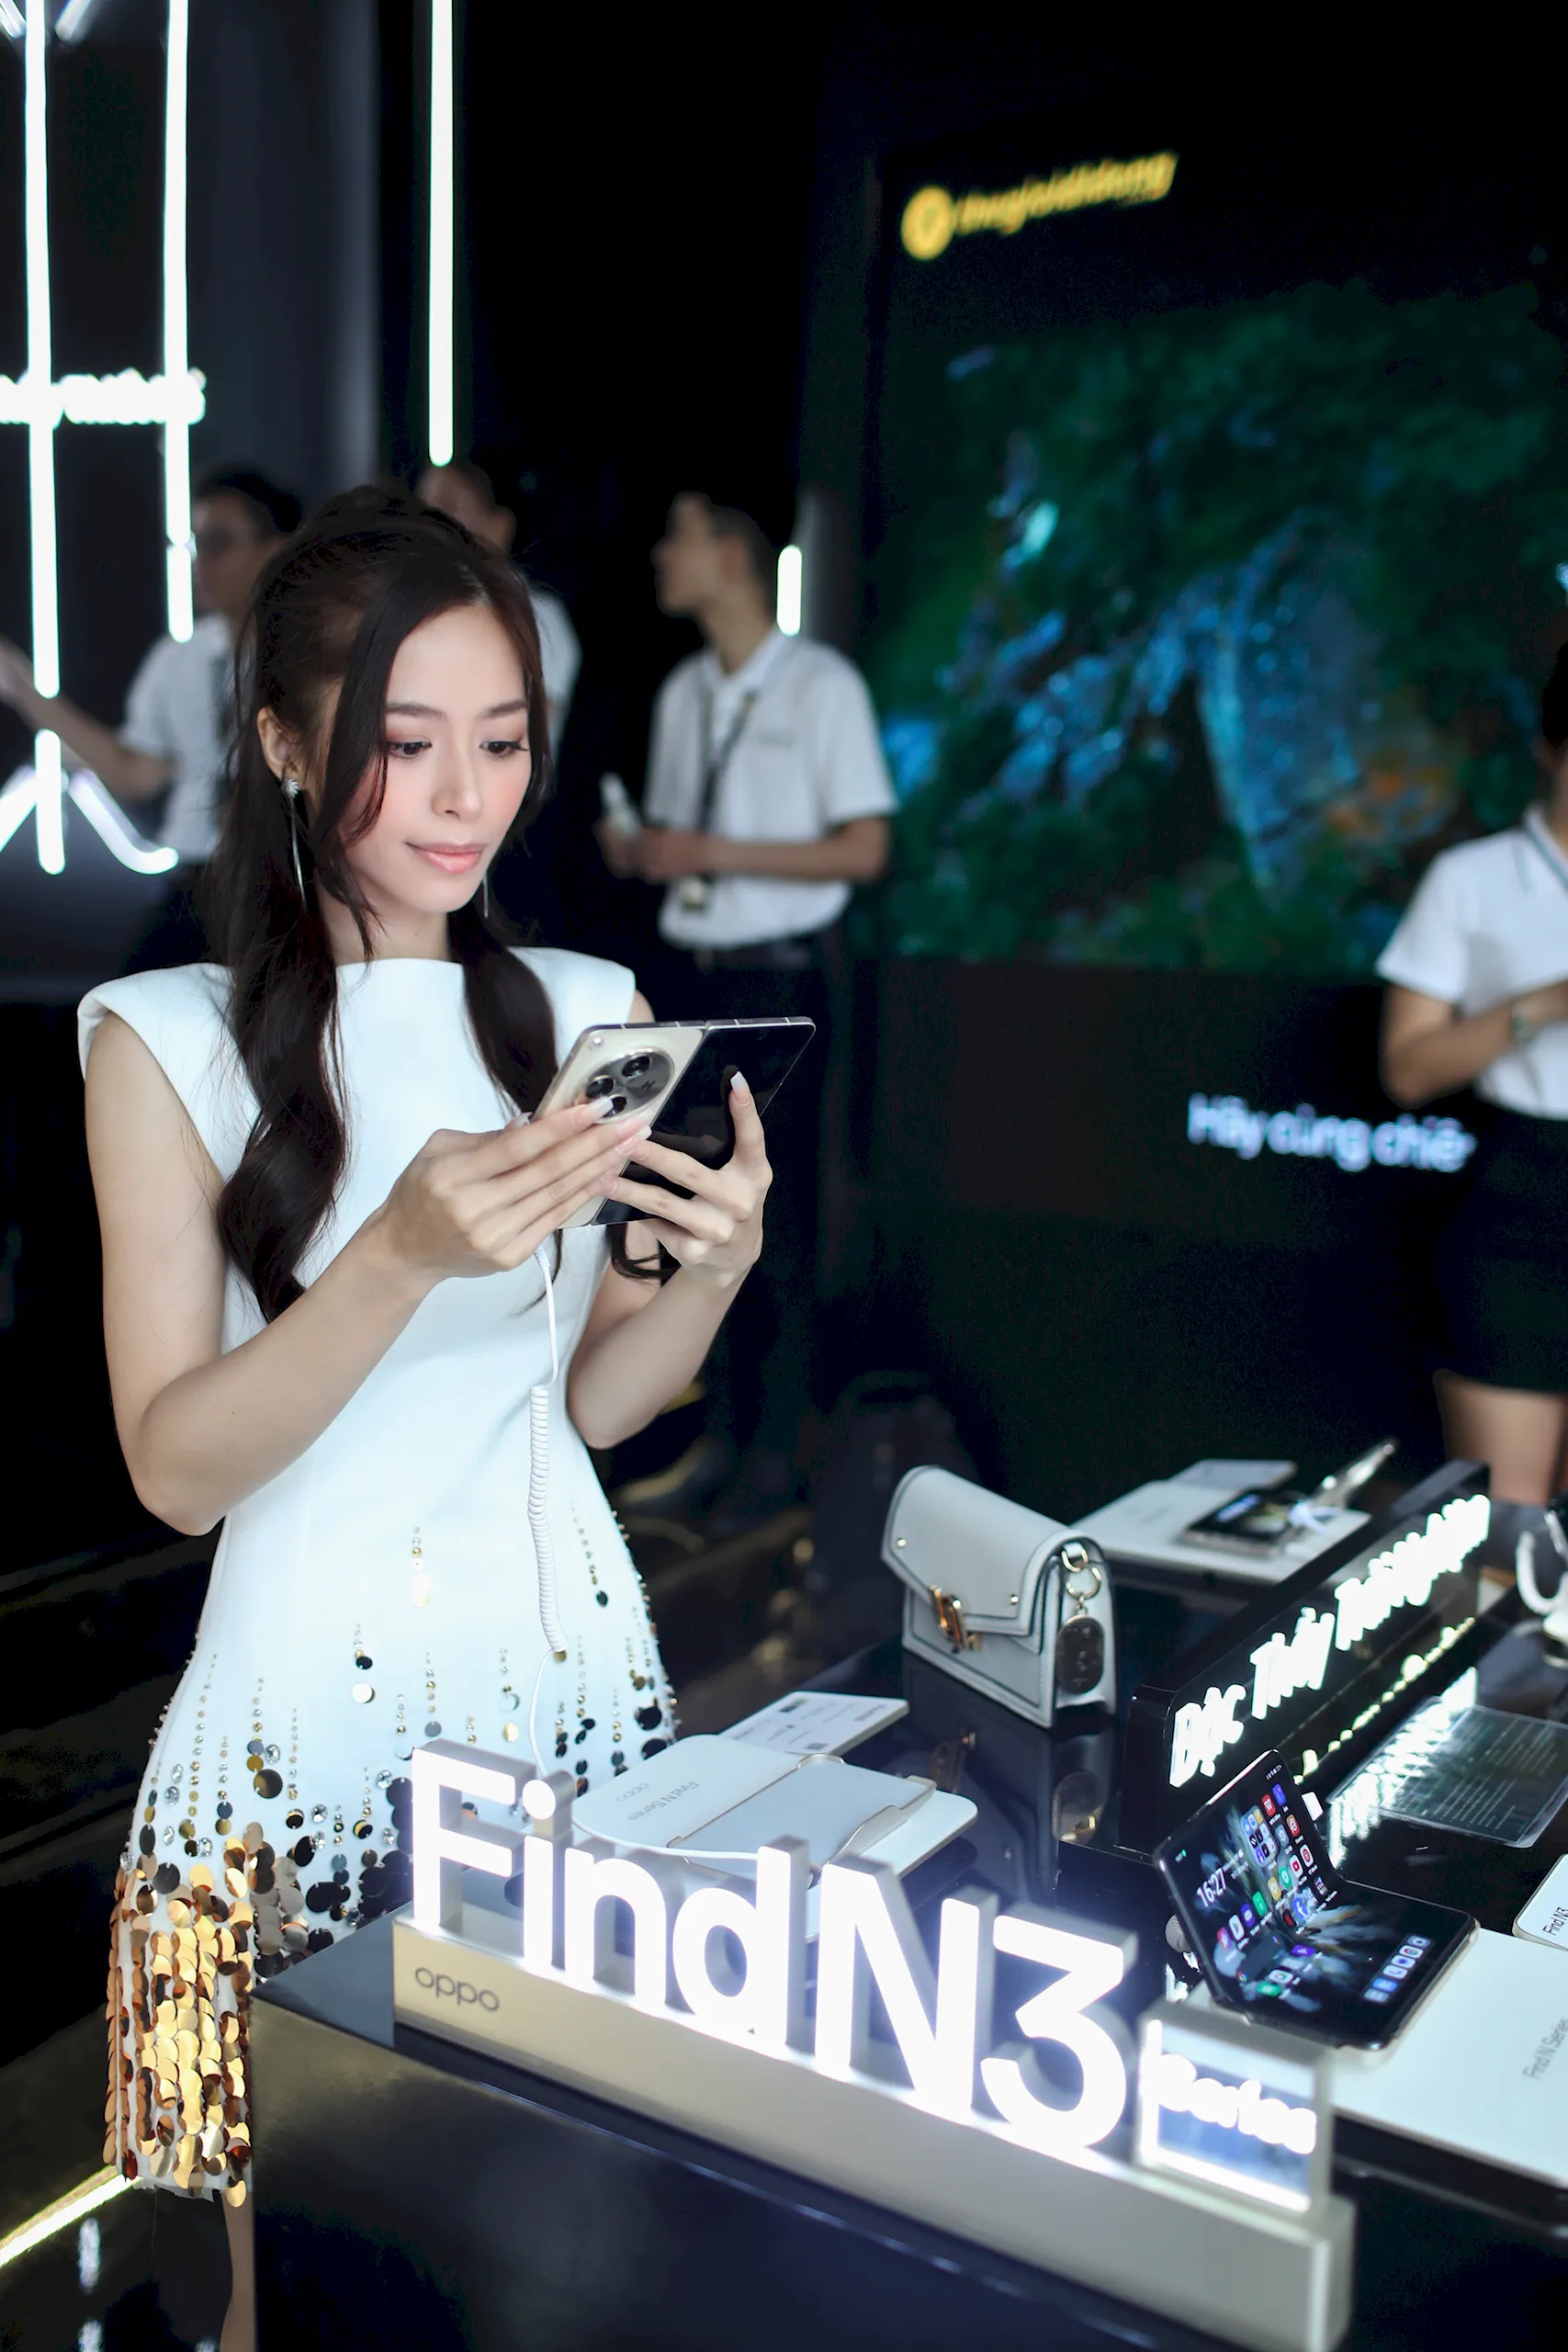 Bộ đôi smartphone gập OPPO Find N3 Series chính thức mở bán tại Việt Nam